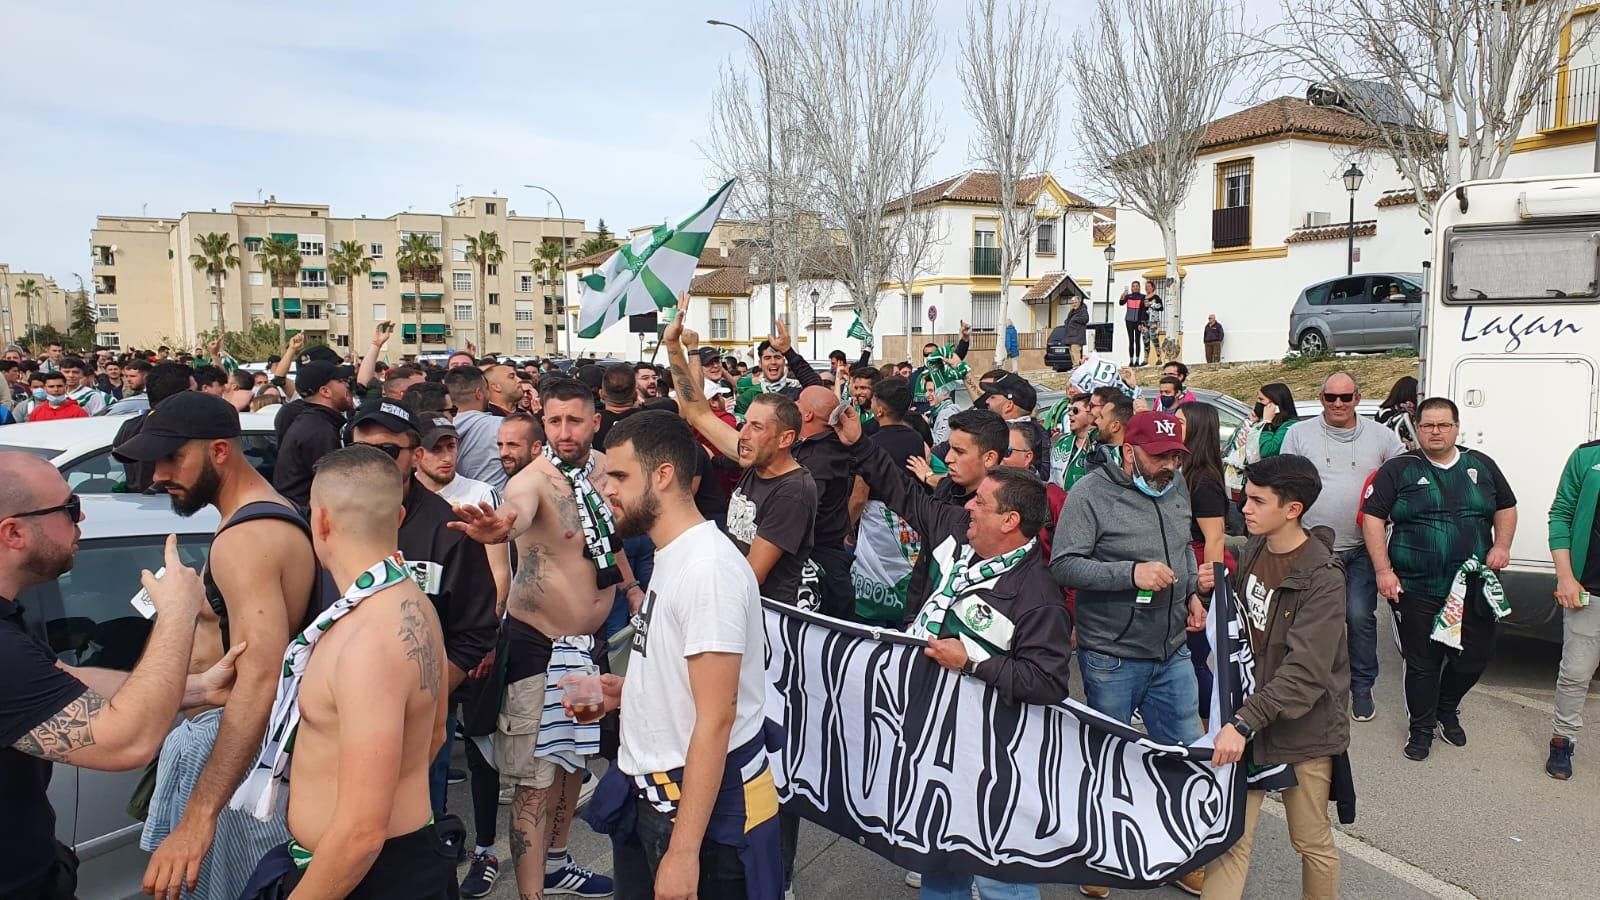 Las imágenes del Antequera-Córdoba CF